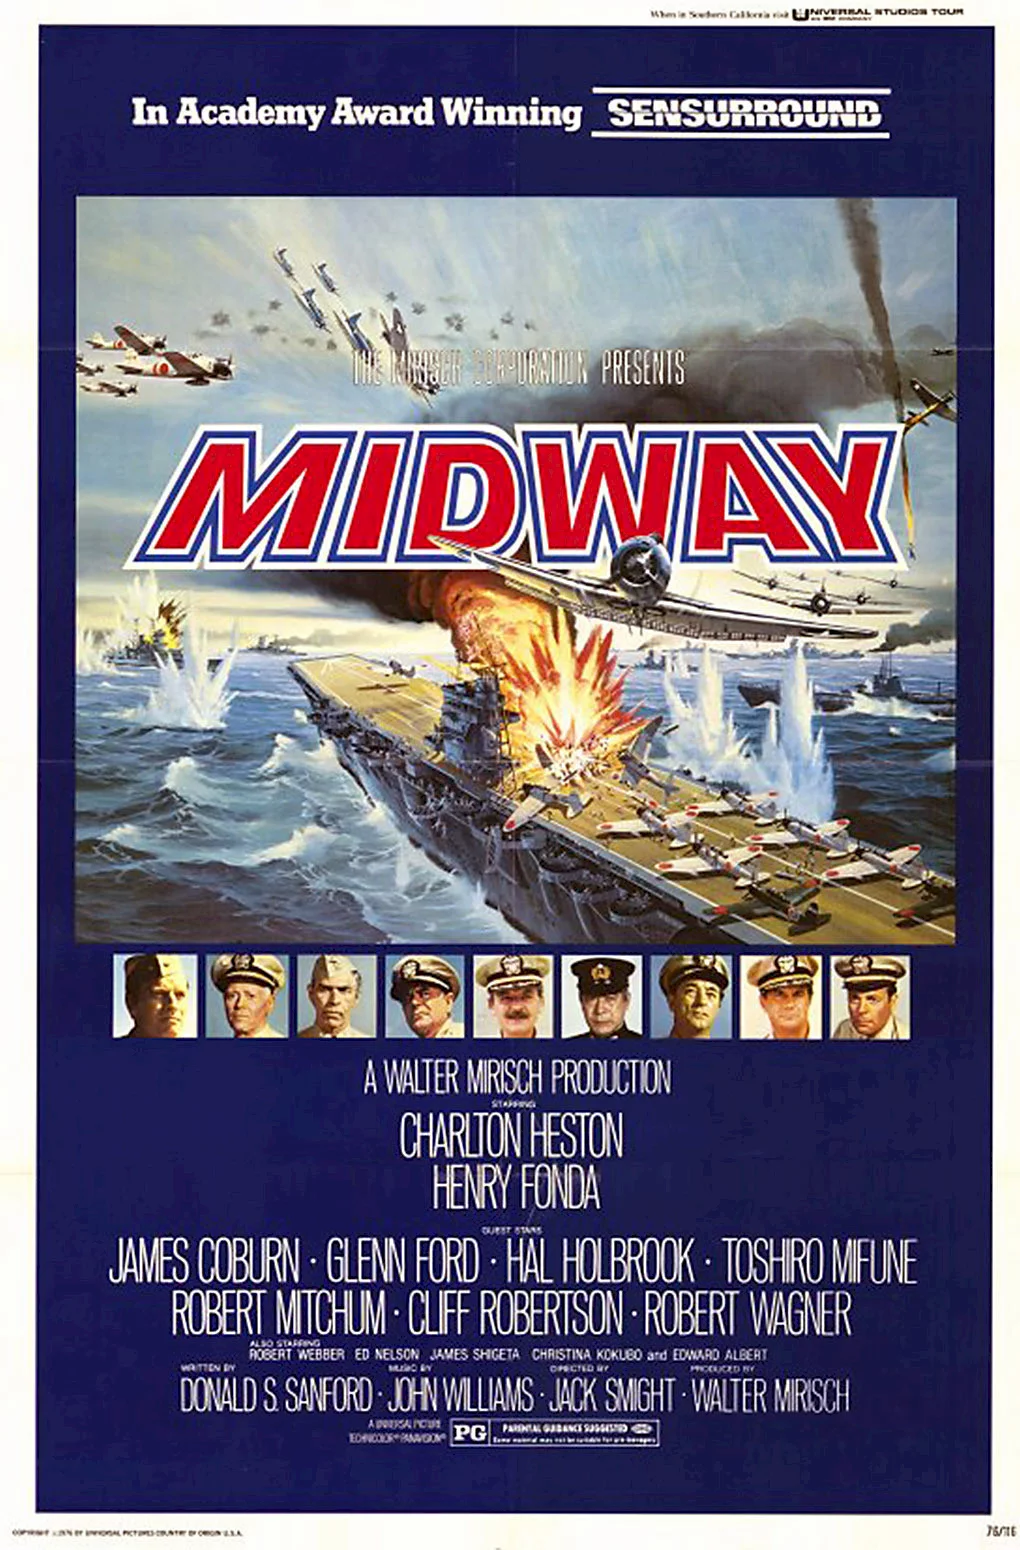 Photo du film : La bataille de midway